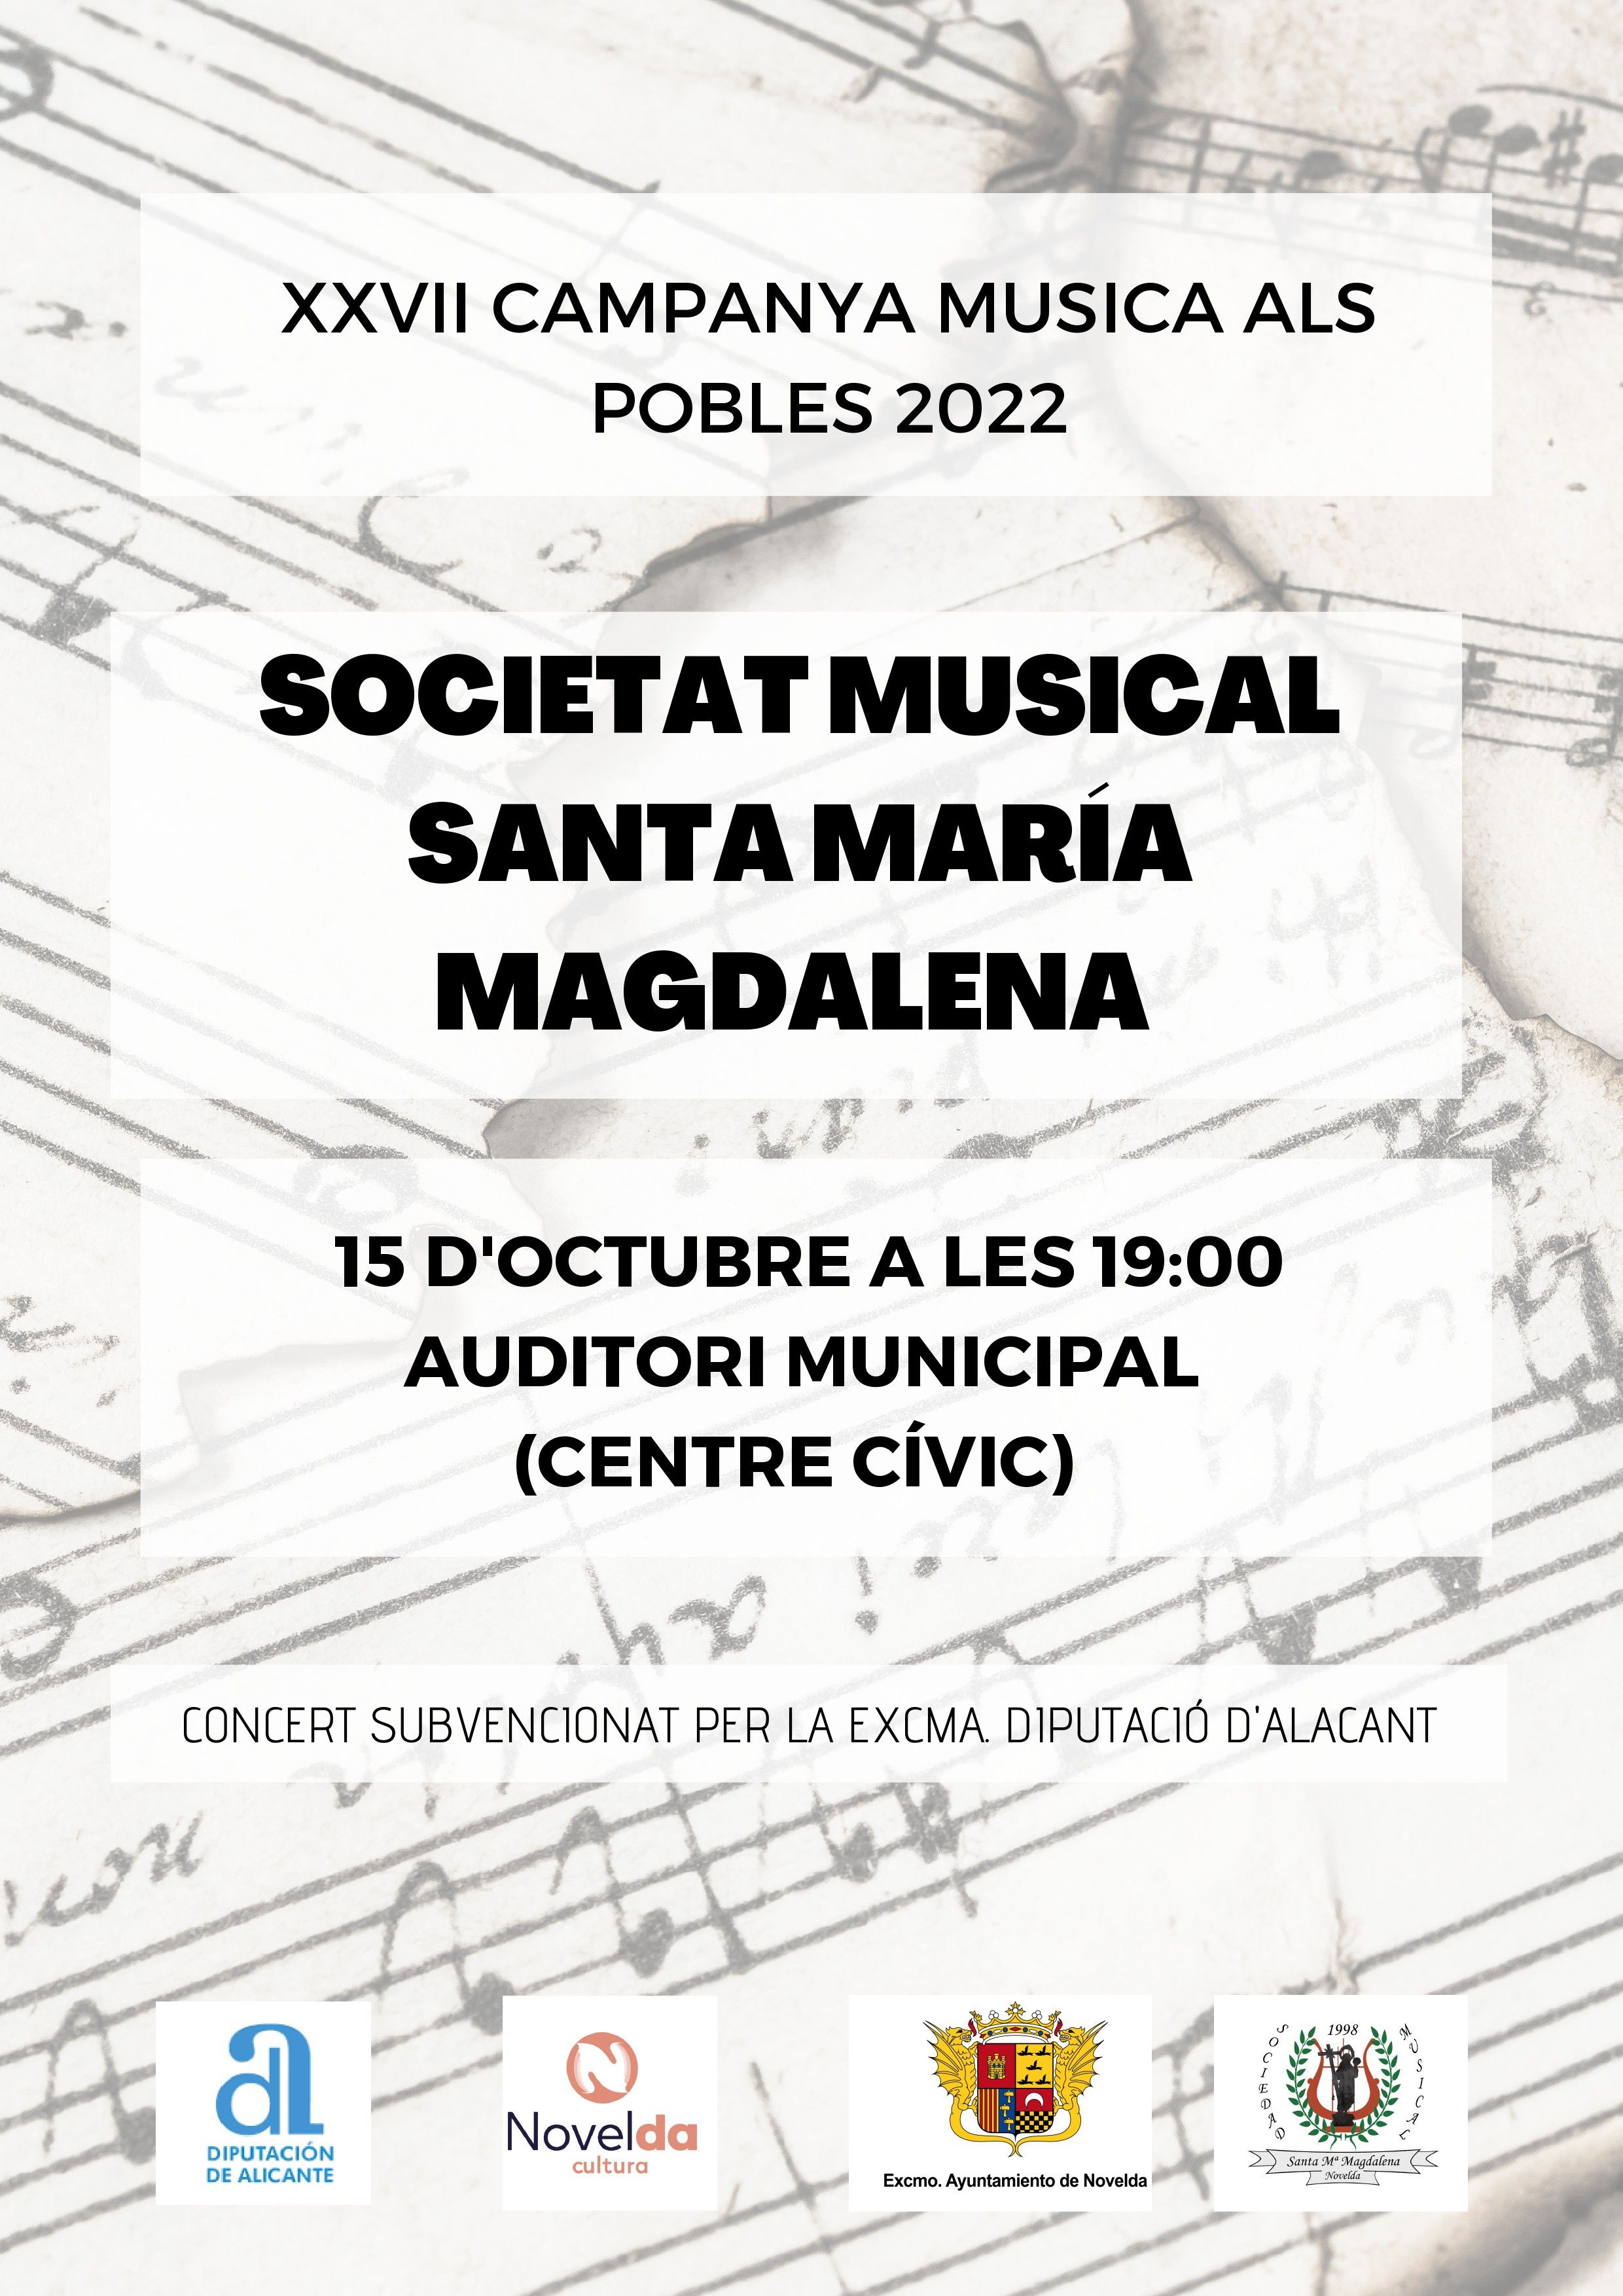 Ayuntamiento de Novelda CAMPAÑA-MUSICAL XXVII CAMPAÑA MÚSICA EN LOS PUEBLOS 2022 